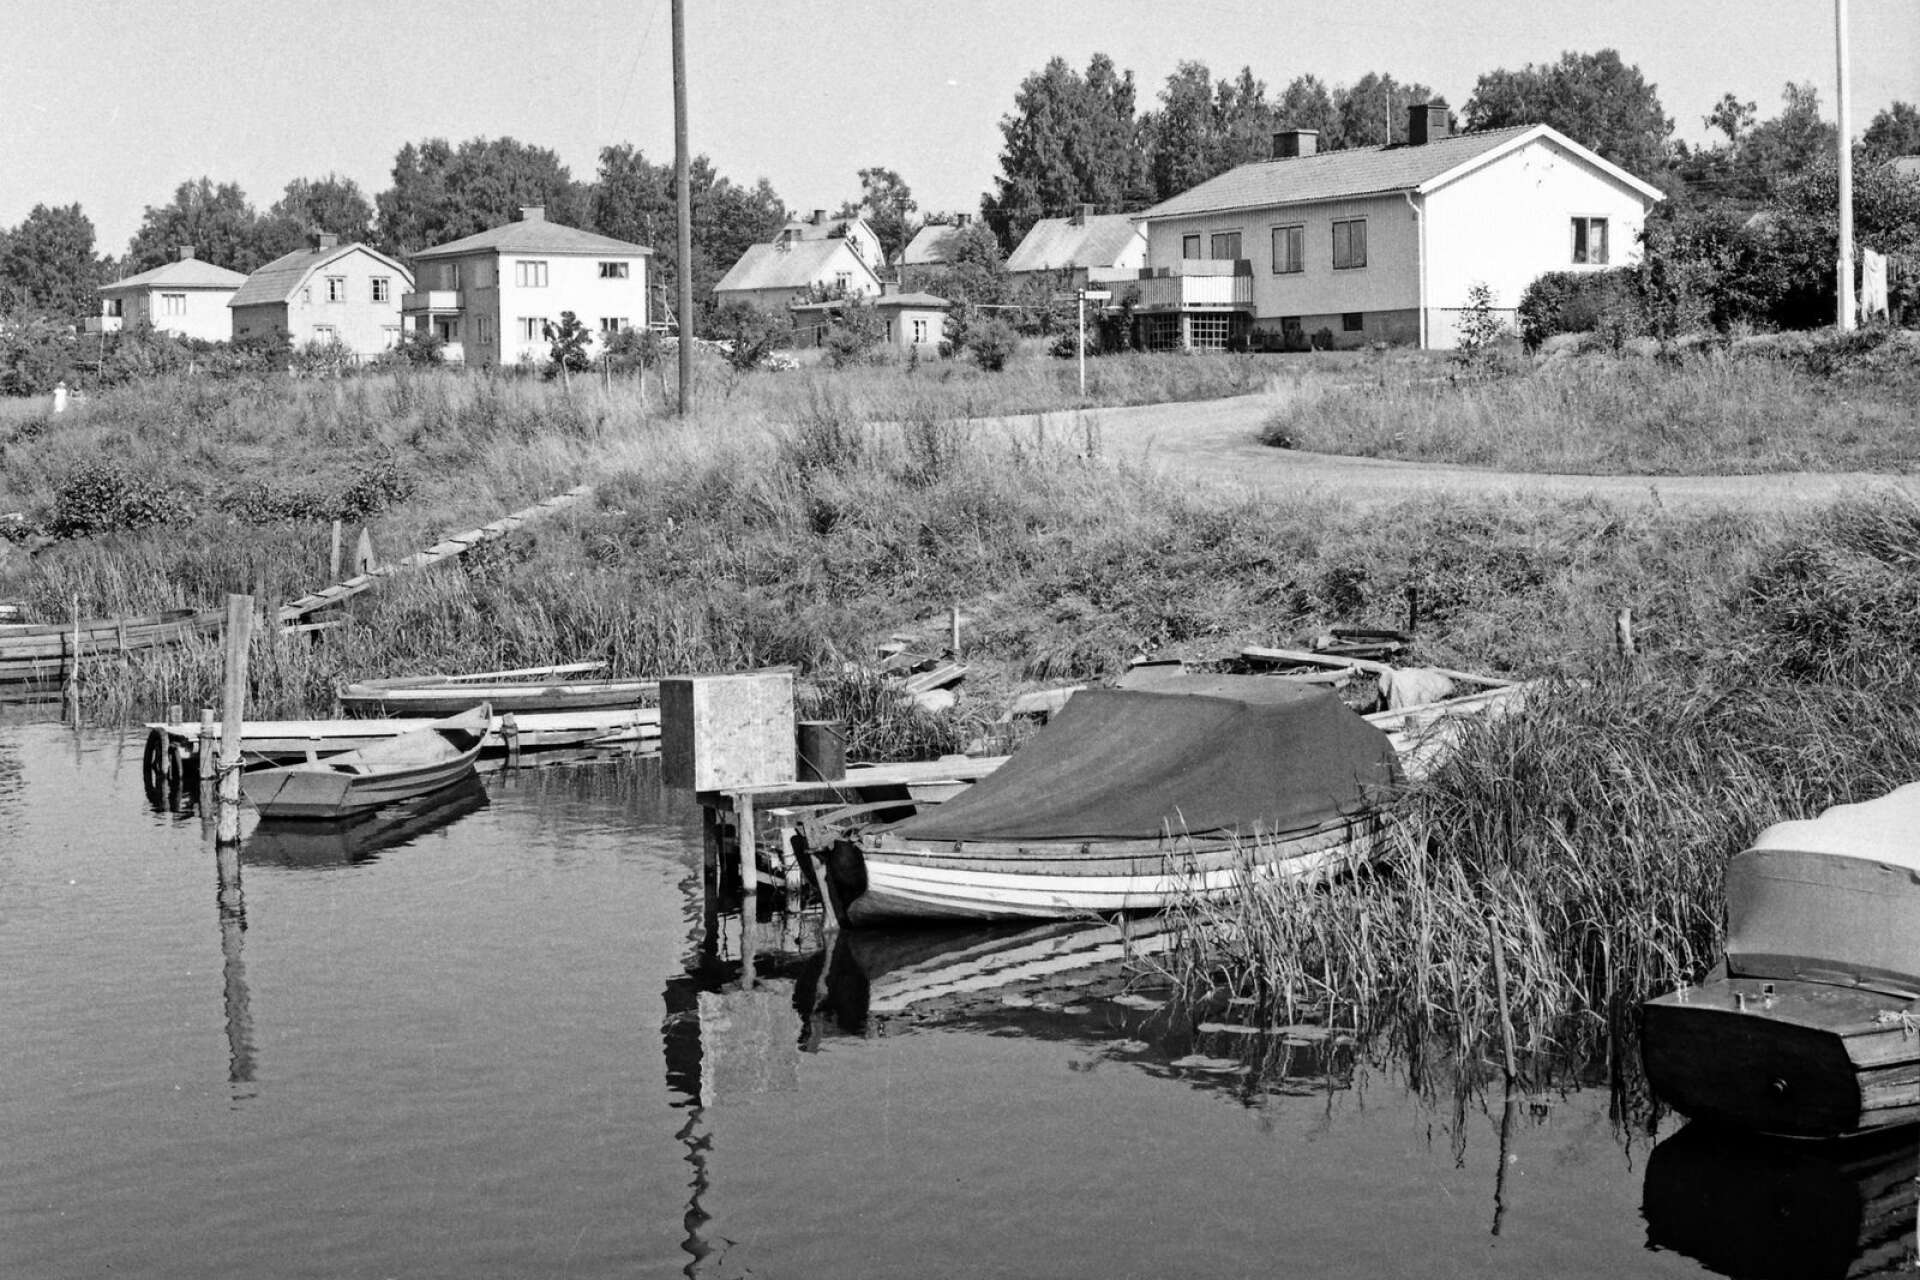 En idyll mötte reportern vid Norra Tingvallastrand. Där låg småbåtar förtöjda längs stranden och en bit därifrån sågs villor med välskötta trädgårdar. 